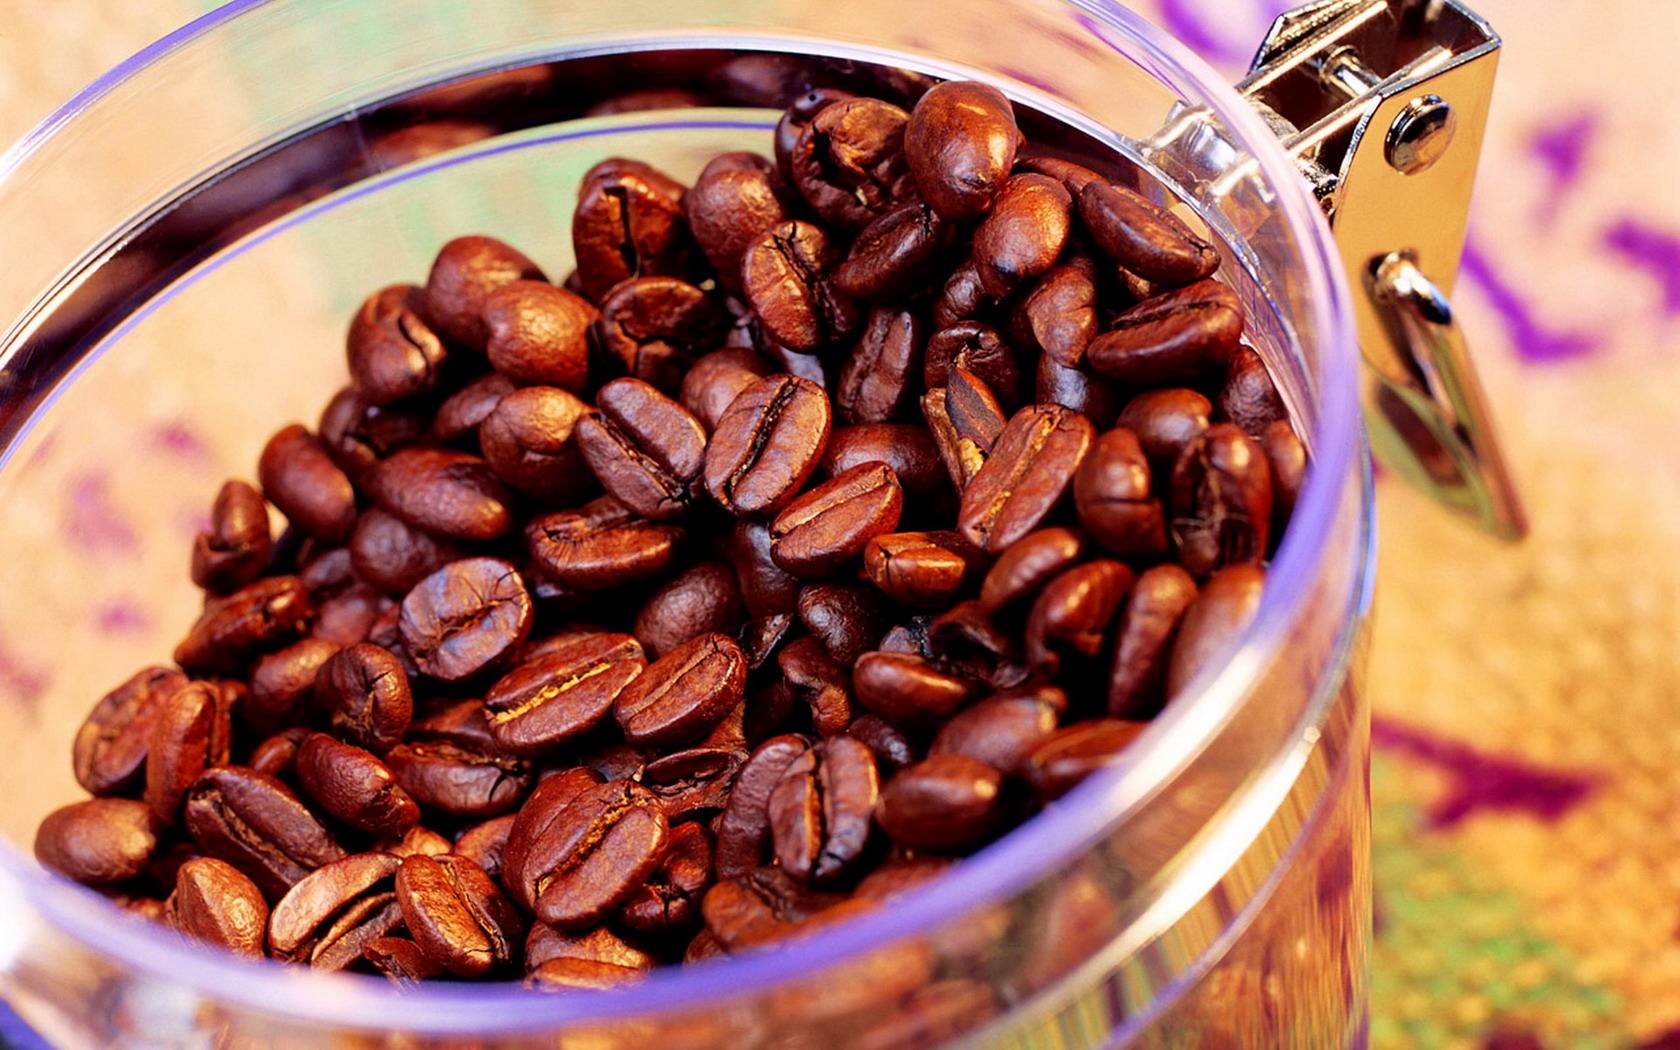 非洲肯尼亚咖啡豆什么咖啡品牌好 肯尼亚咖啡口感特点